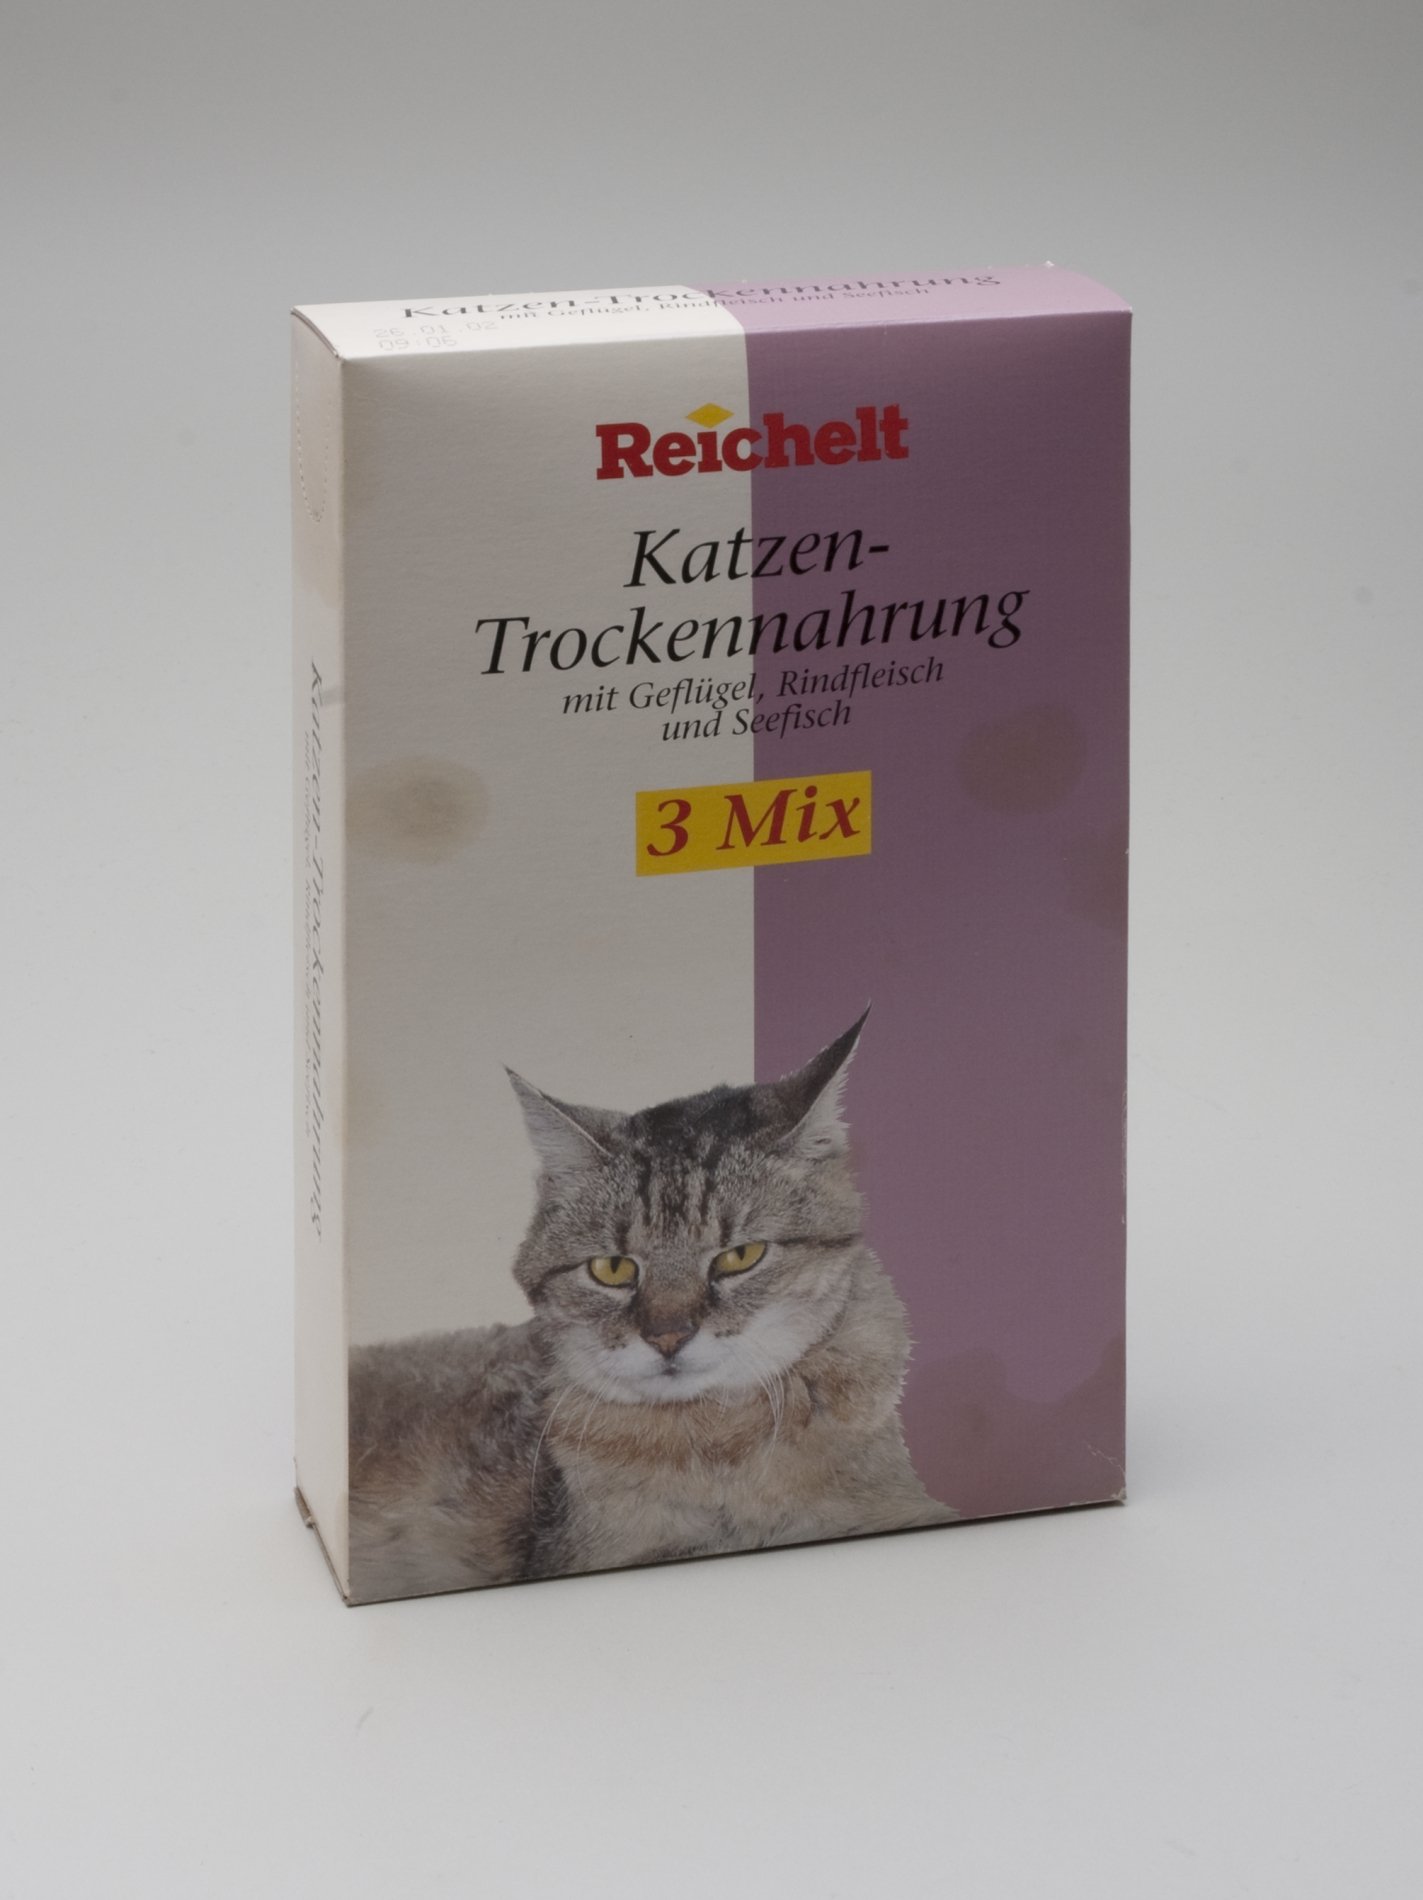 Verpackung der "Reichelt" Eigenmarke - "Katzen-Trockennahrung" (Stiftung Domäne Dahlem - Landgut und Museum, Weiternutzung nur mit Genehmigung des Museums CC BY-NC-SA)